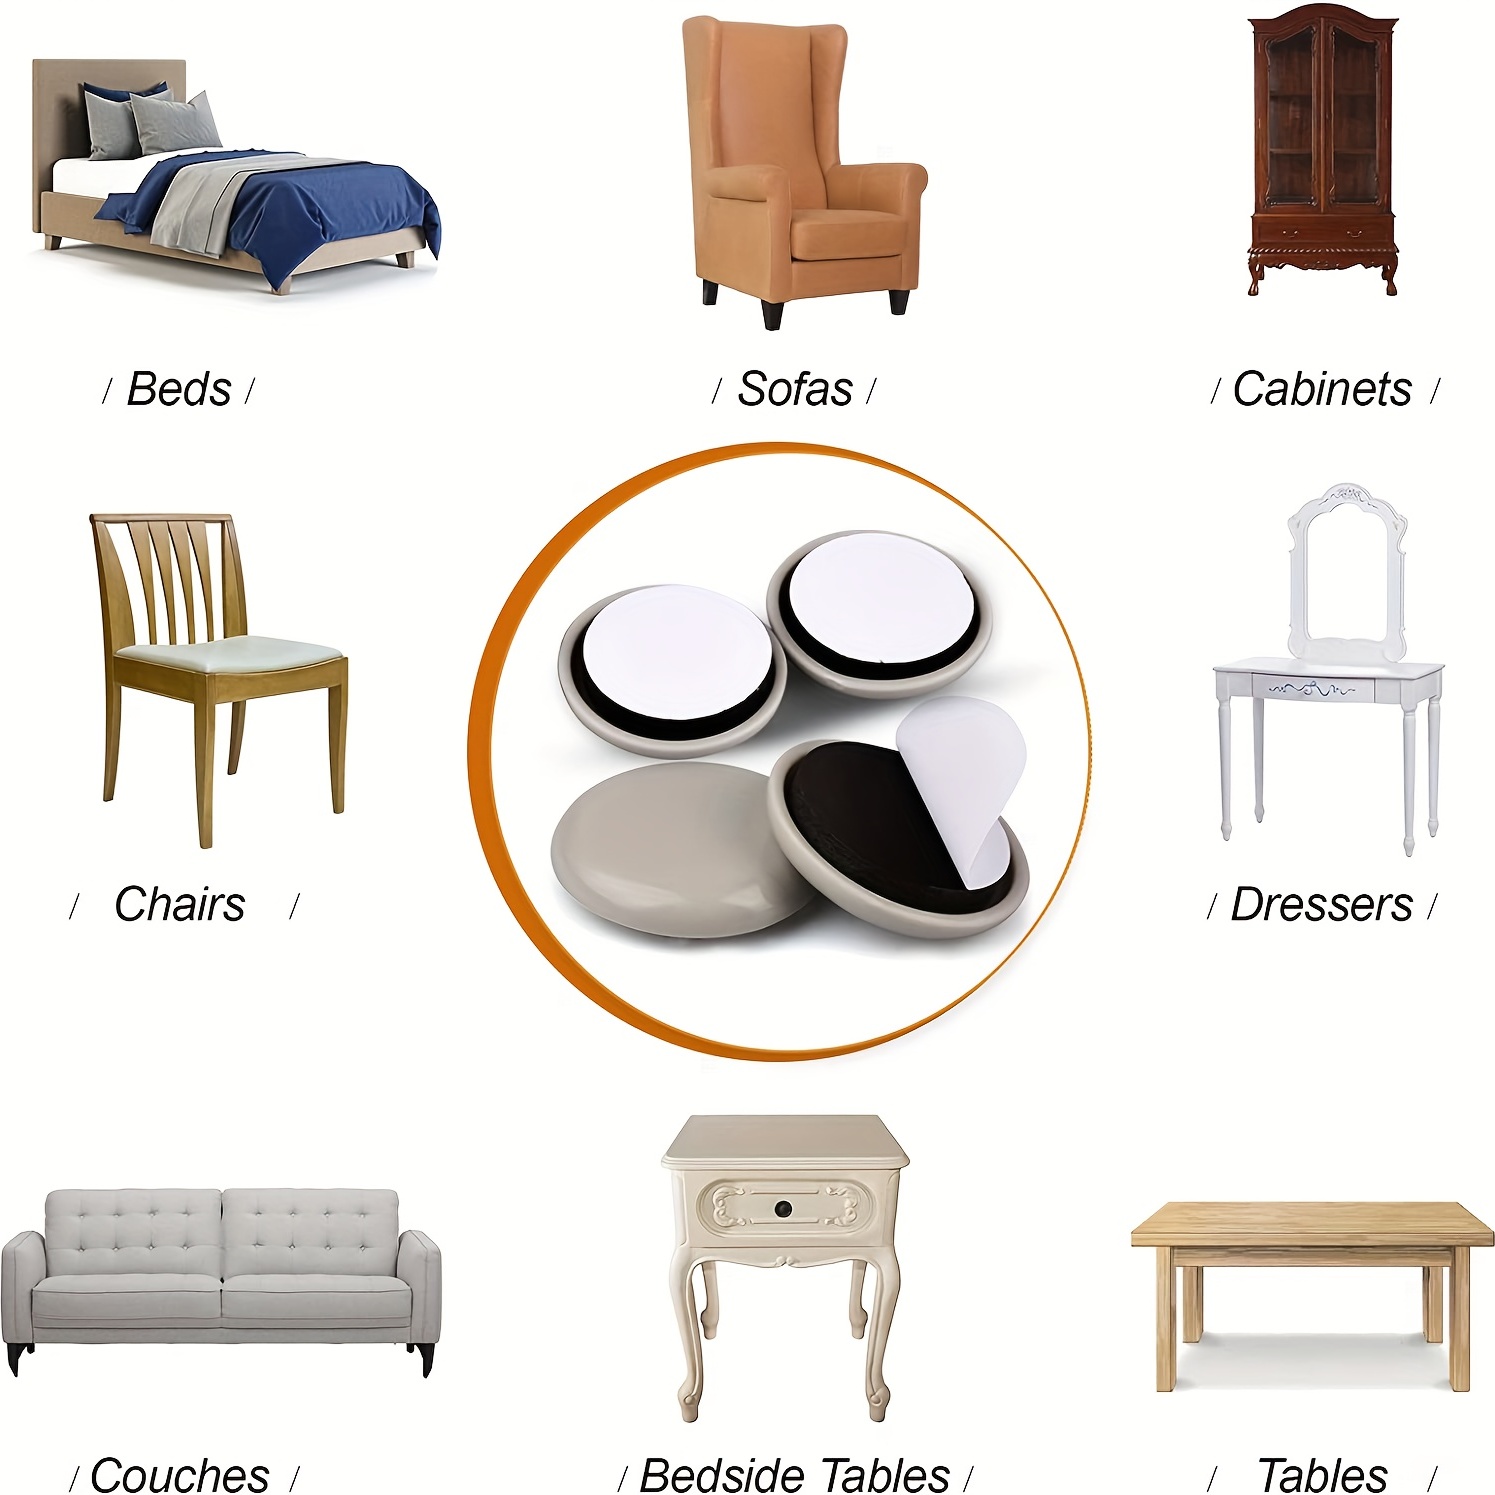 Deslizadores de muebles para alfombras y pisos de madera dura, deslizadores  adhesivos para muebles, almohadillas autoadhesivas para muebles (8